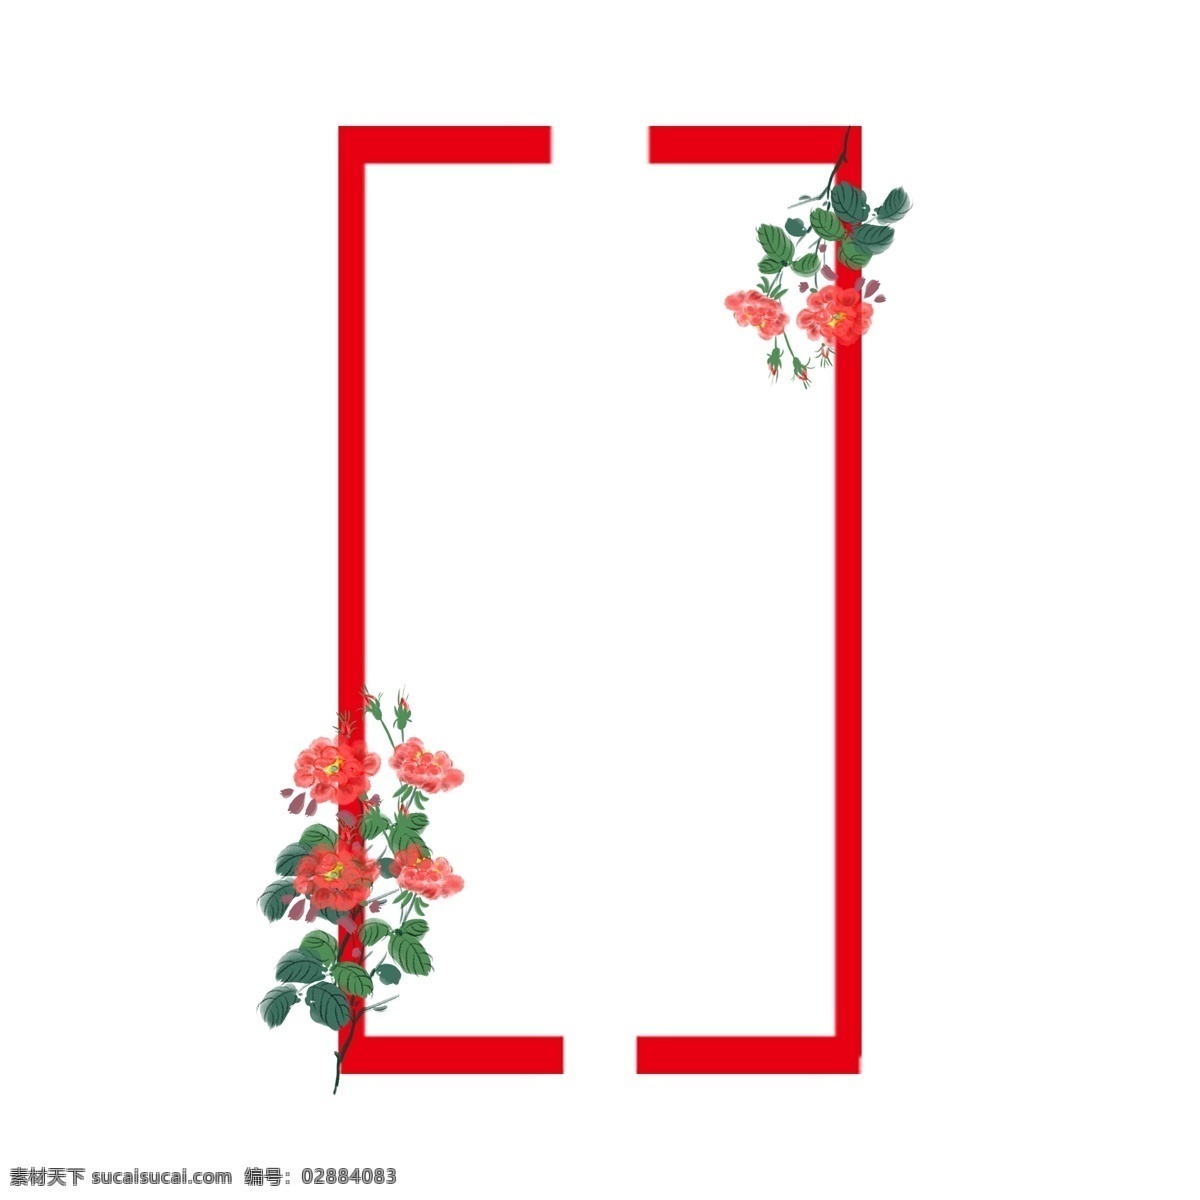 手绘 红色 玫瑰 边框 红色边框 玫瑰花 红玫瑰边框 爱情边框 爱情花朵 插画 插图 手绘爱情边框